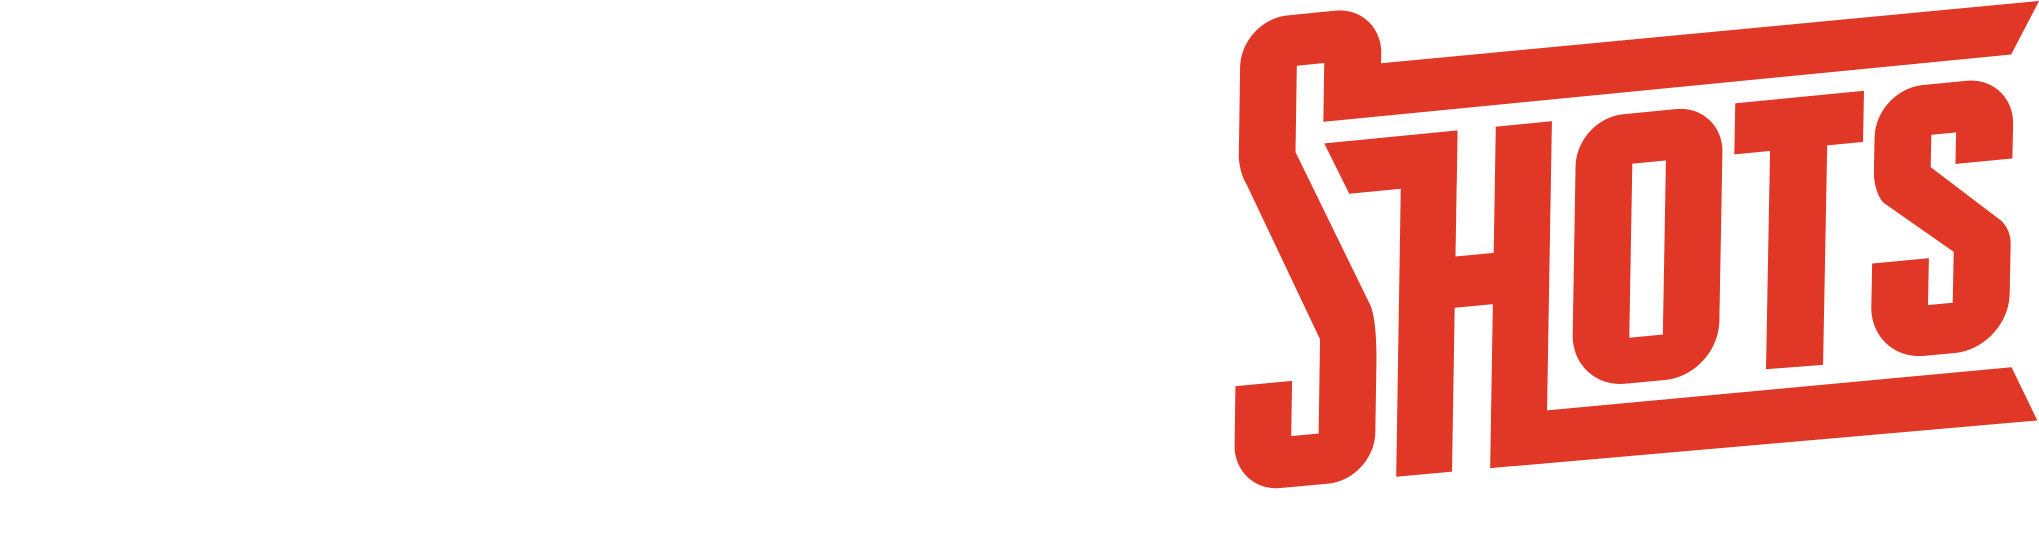 The Cheap Shots Logo PNG